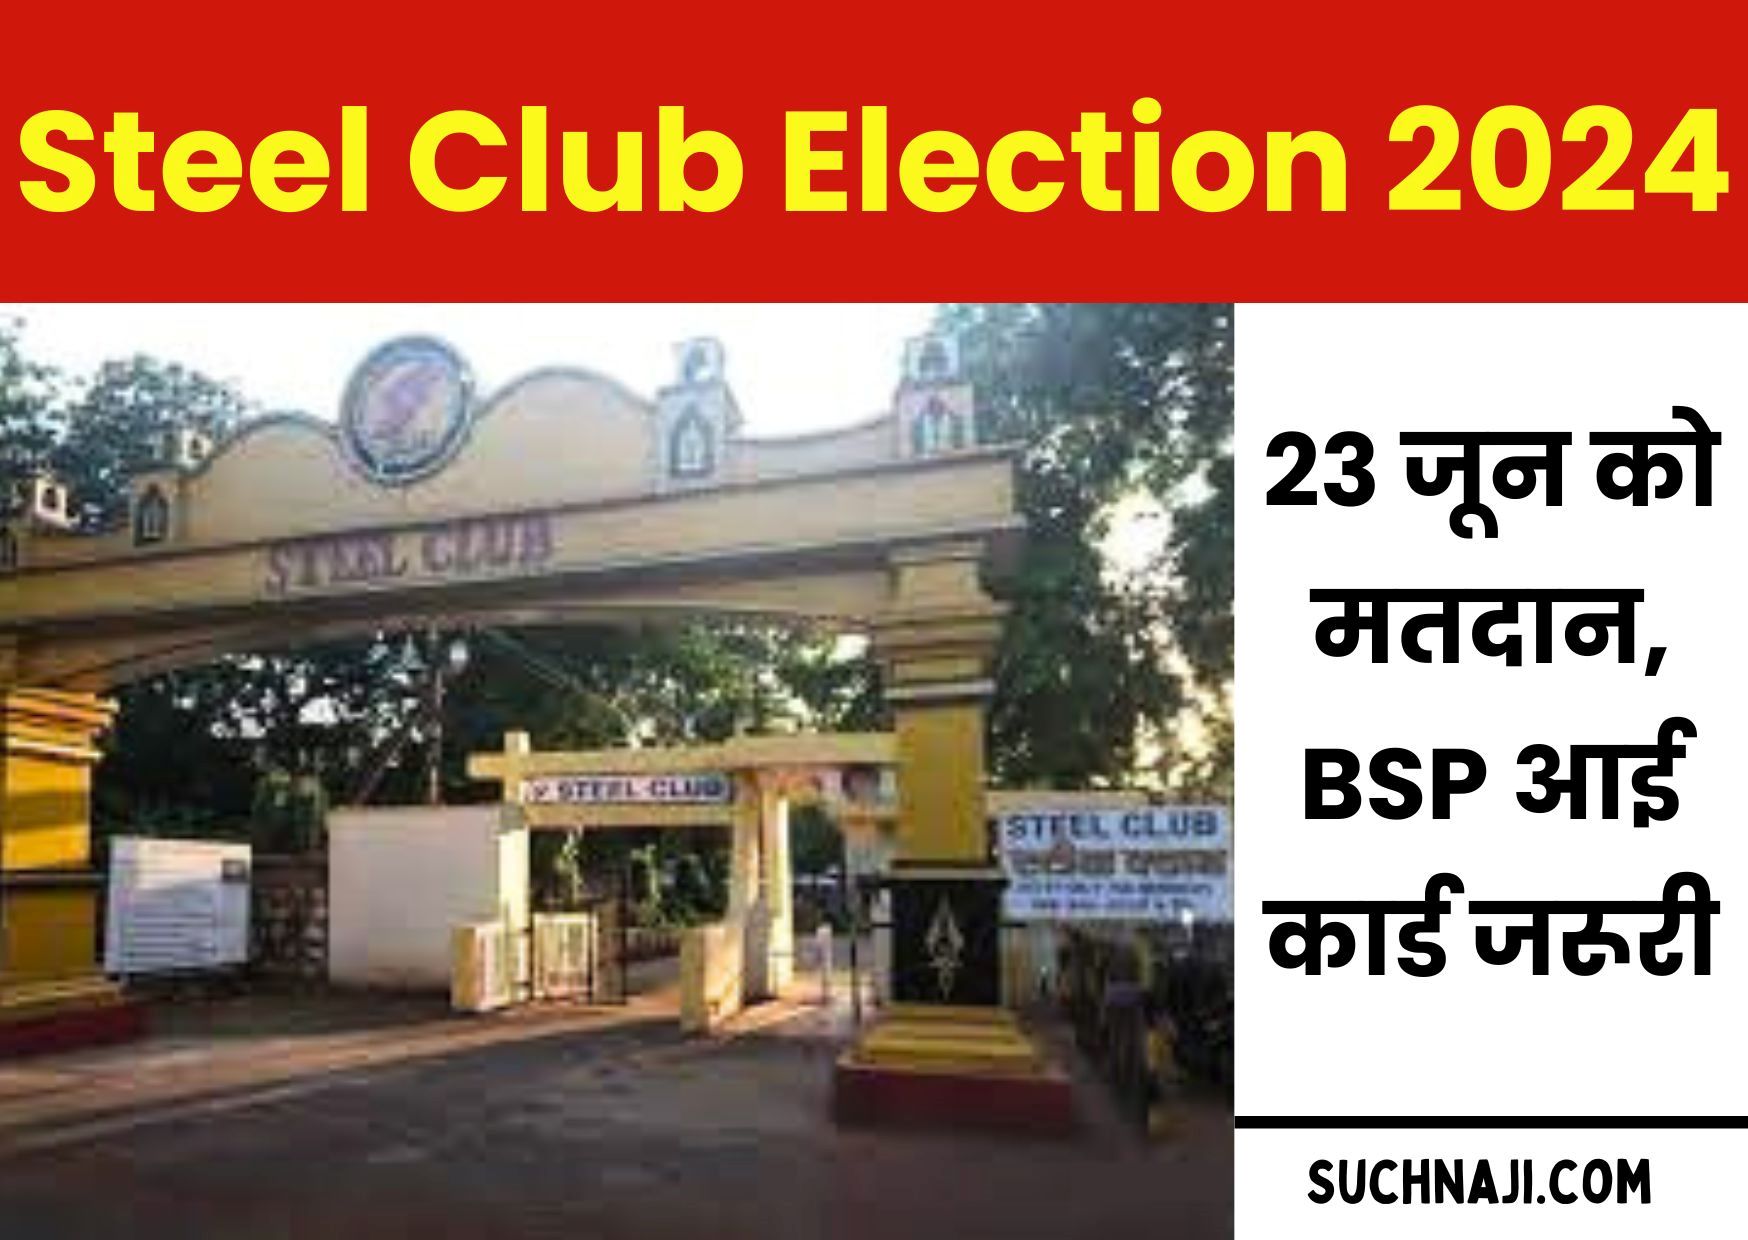 Bhilai Steel Club Election 2024: भिलाई स्टील प्लांट के अधिकारी 23 जून को डालेंगे वोट